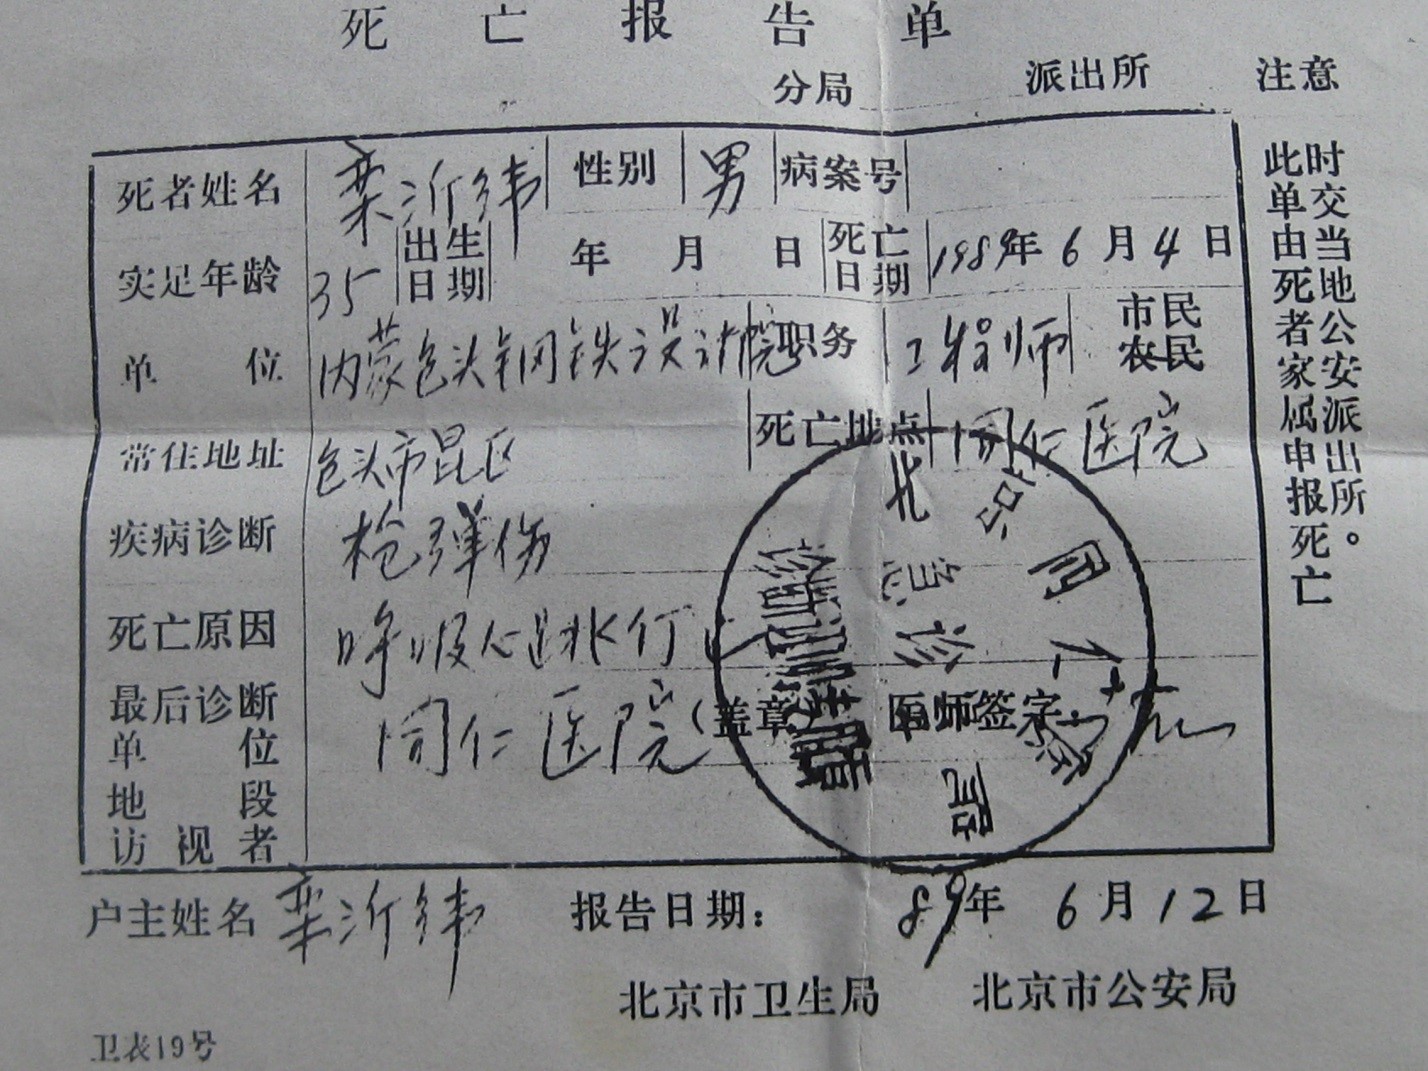 Luan Yiwei’s death certificate